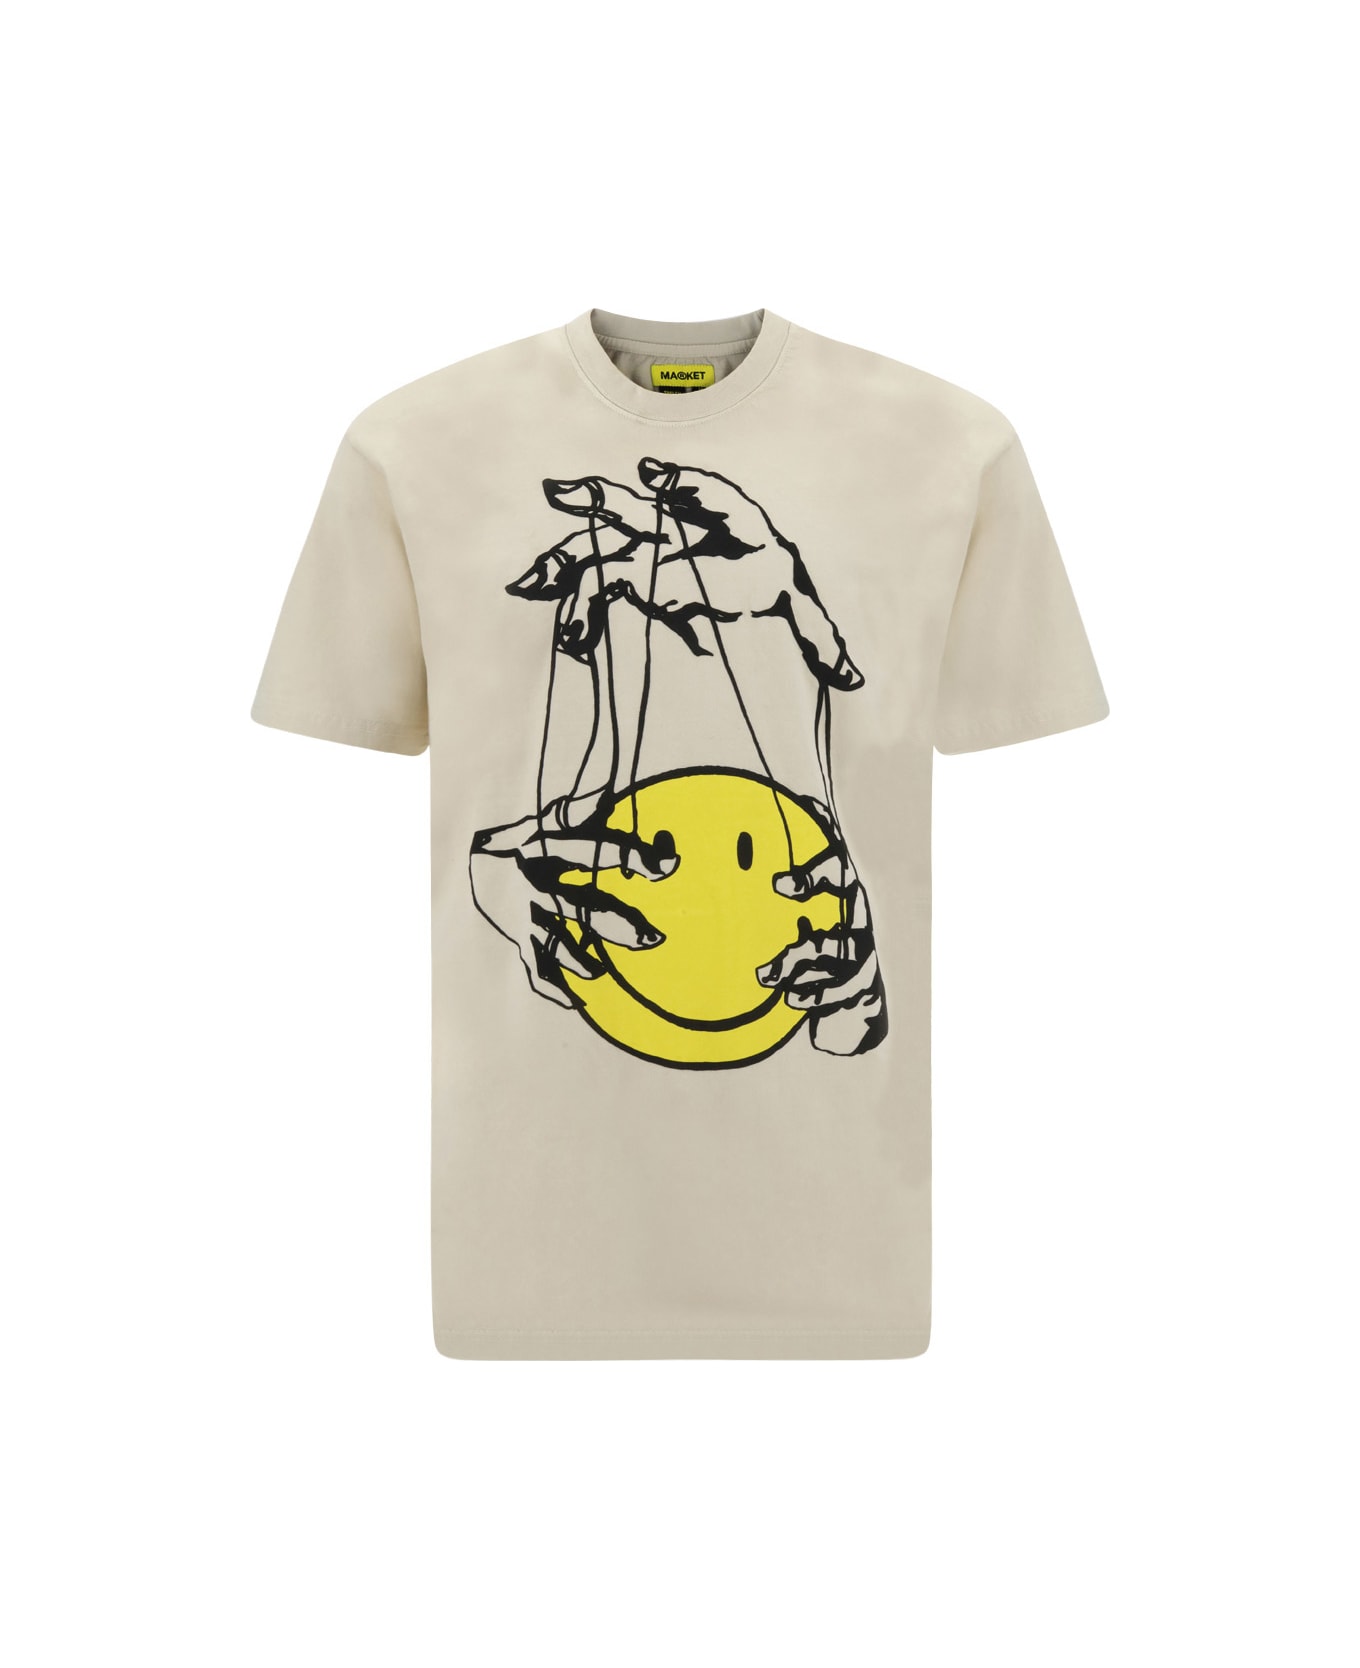 Market T-shirt - Cloud